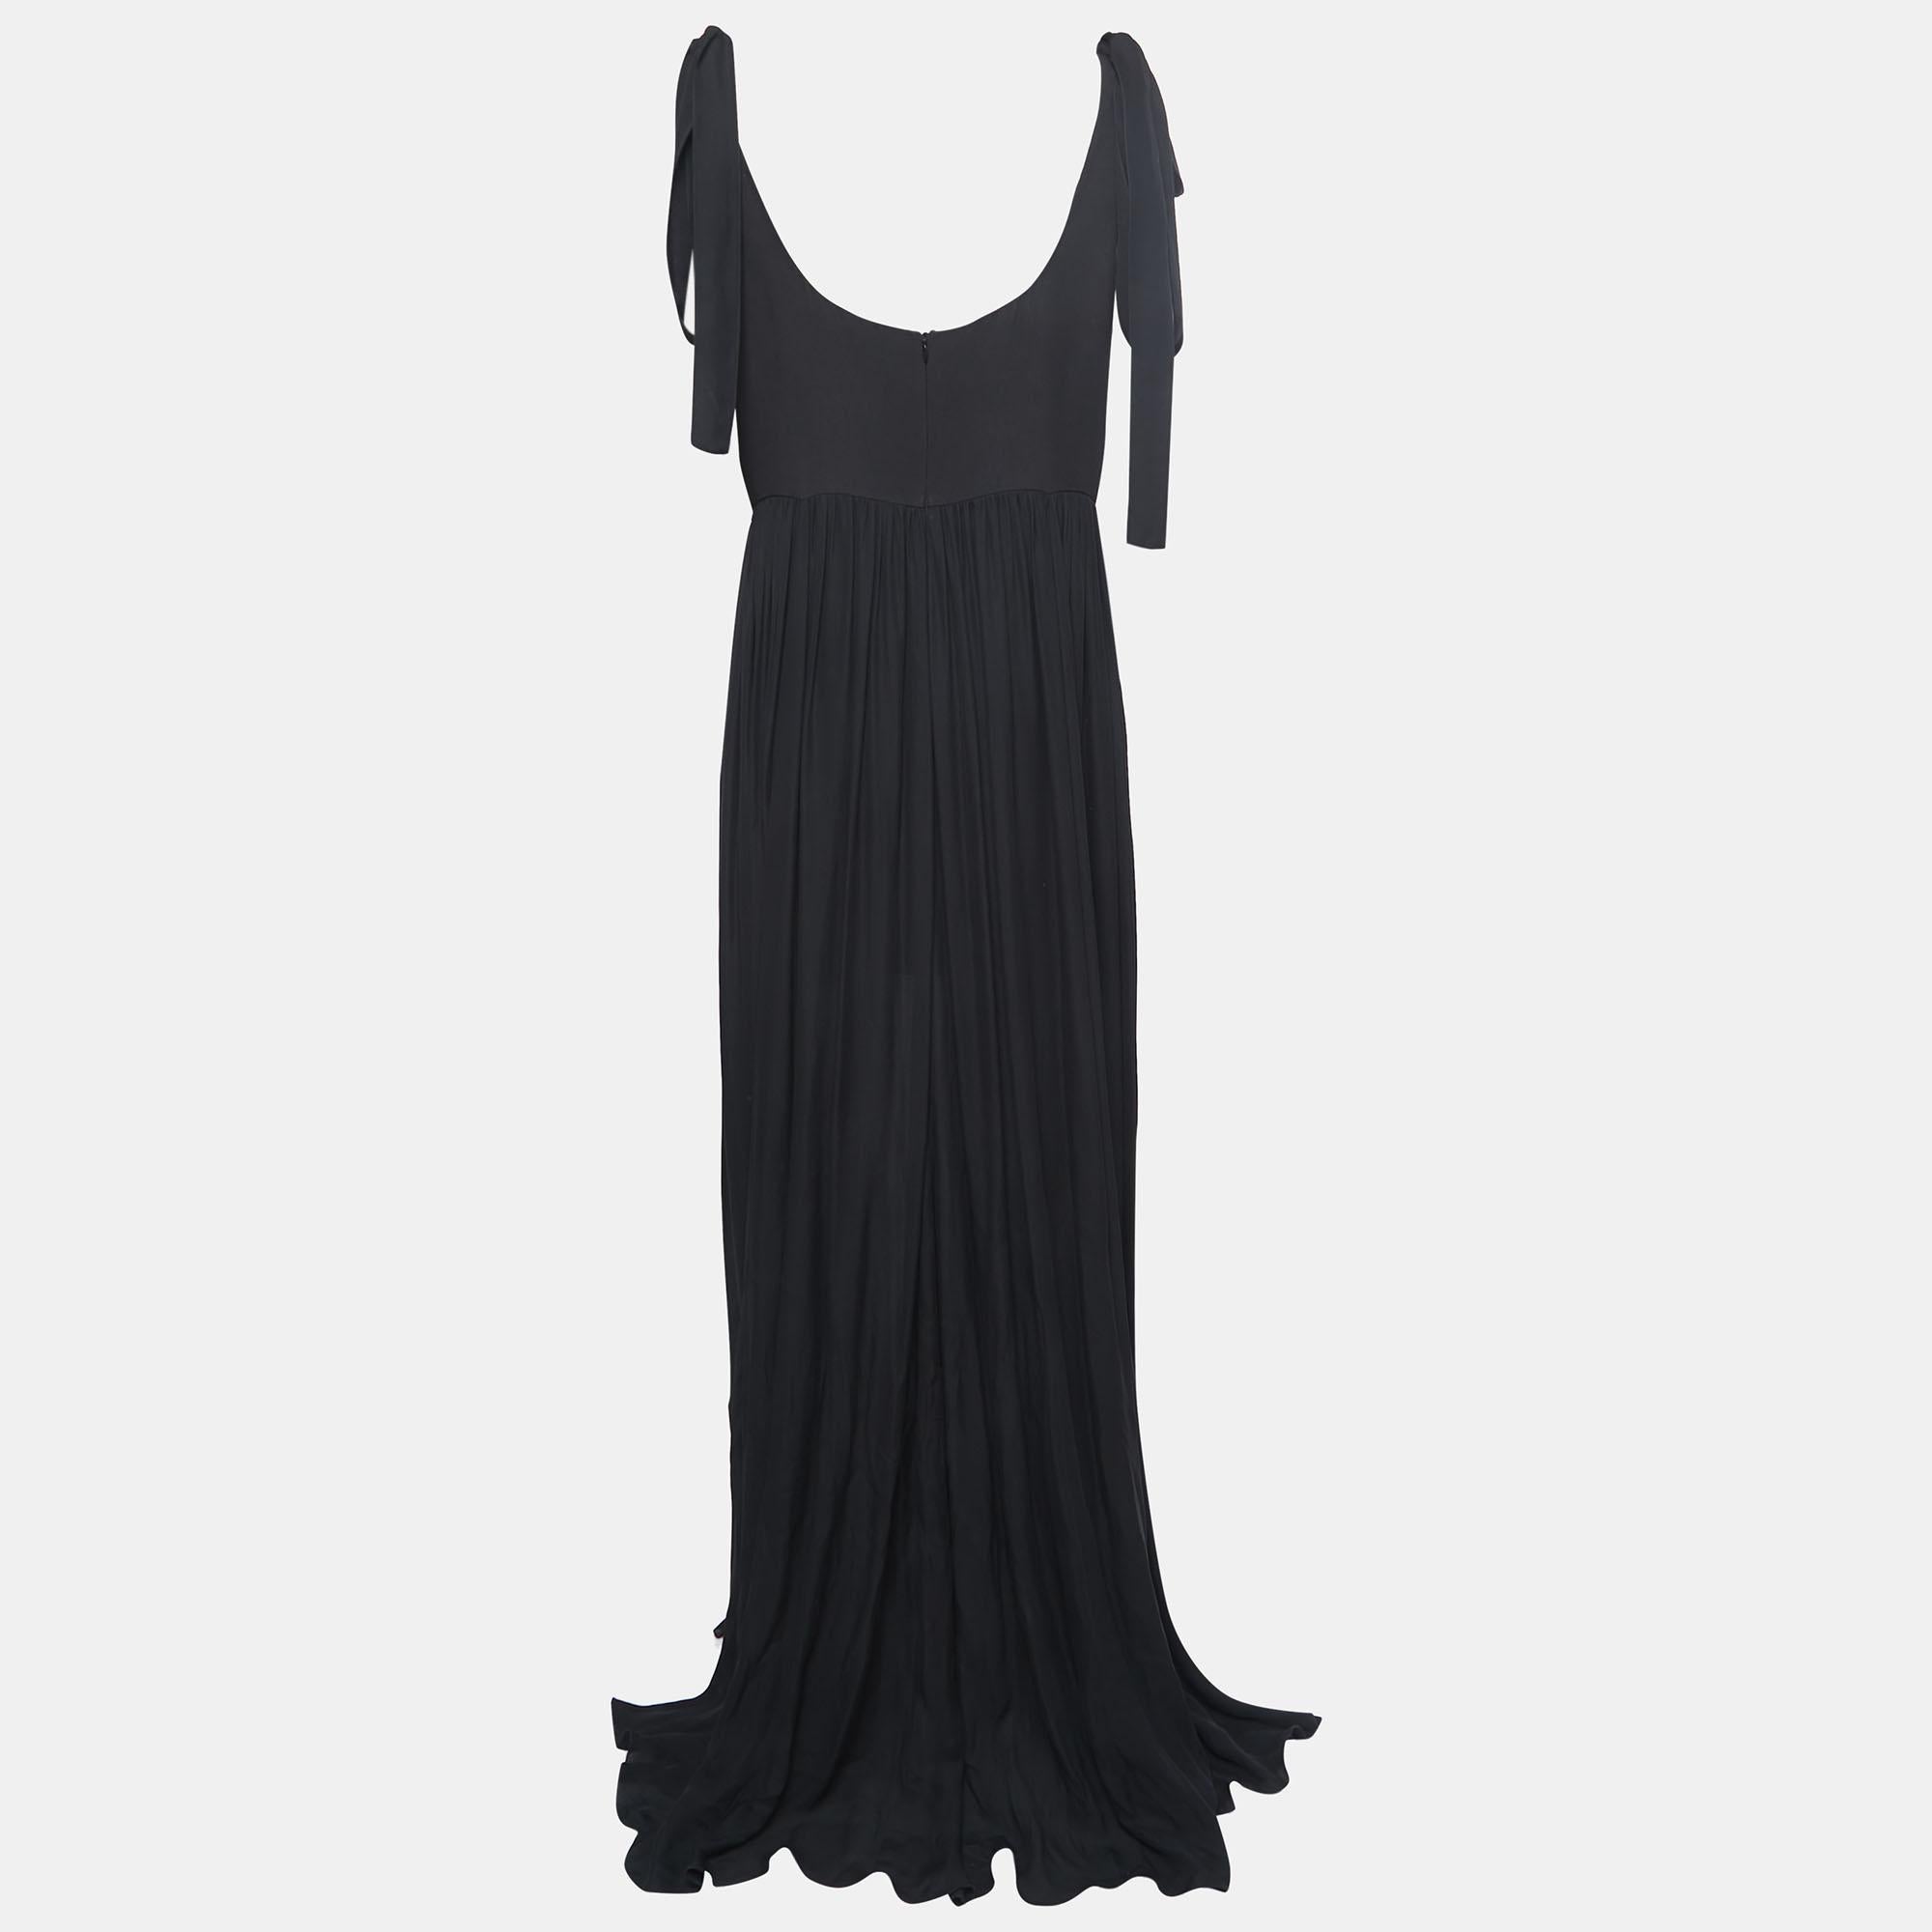 Cette robe longue Elie Saab est une pièce de rêve. Dotée d'un devant embelli et d'un ourlet large, cette robe ne manquera pas de faire des étincelles !

Comprend : Étiquette, embellissements supplémentaires